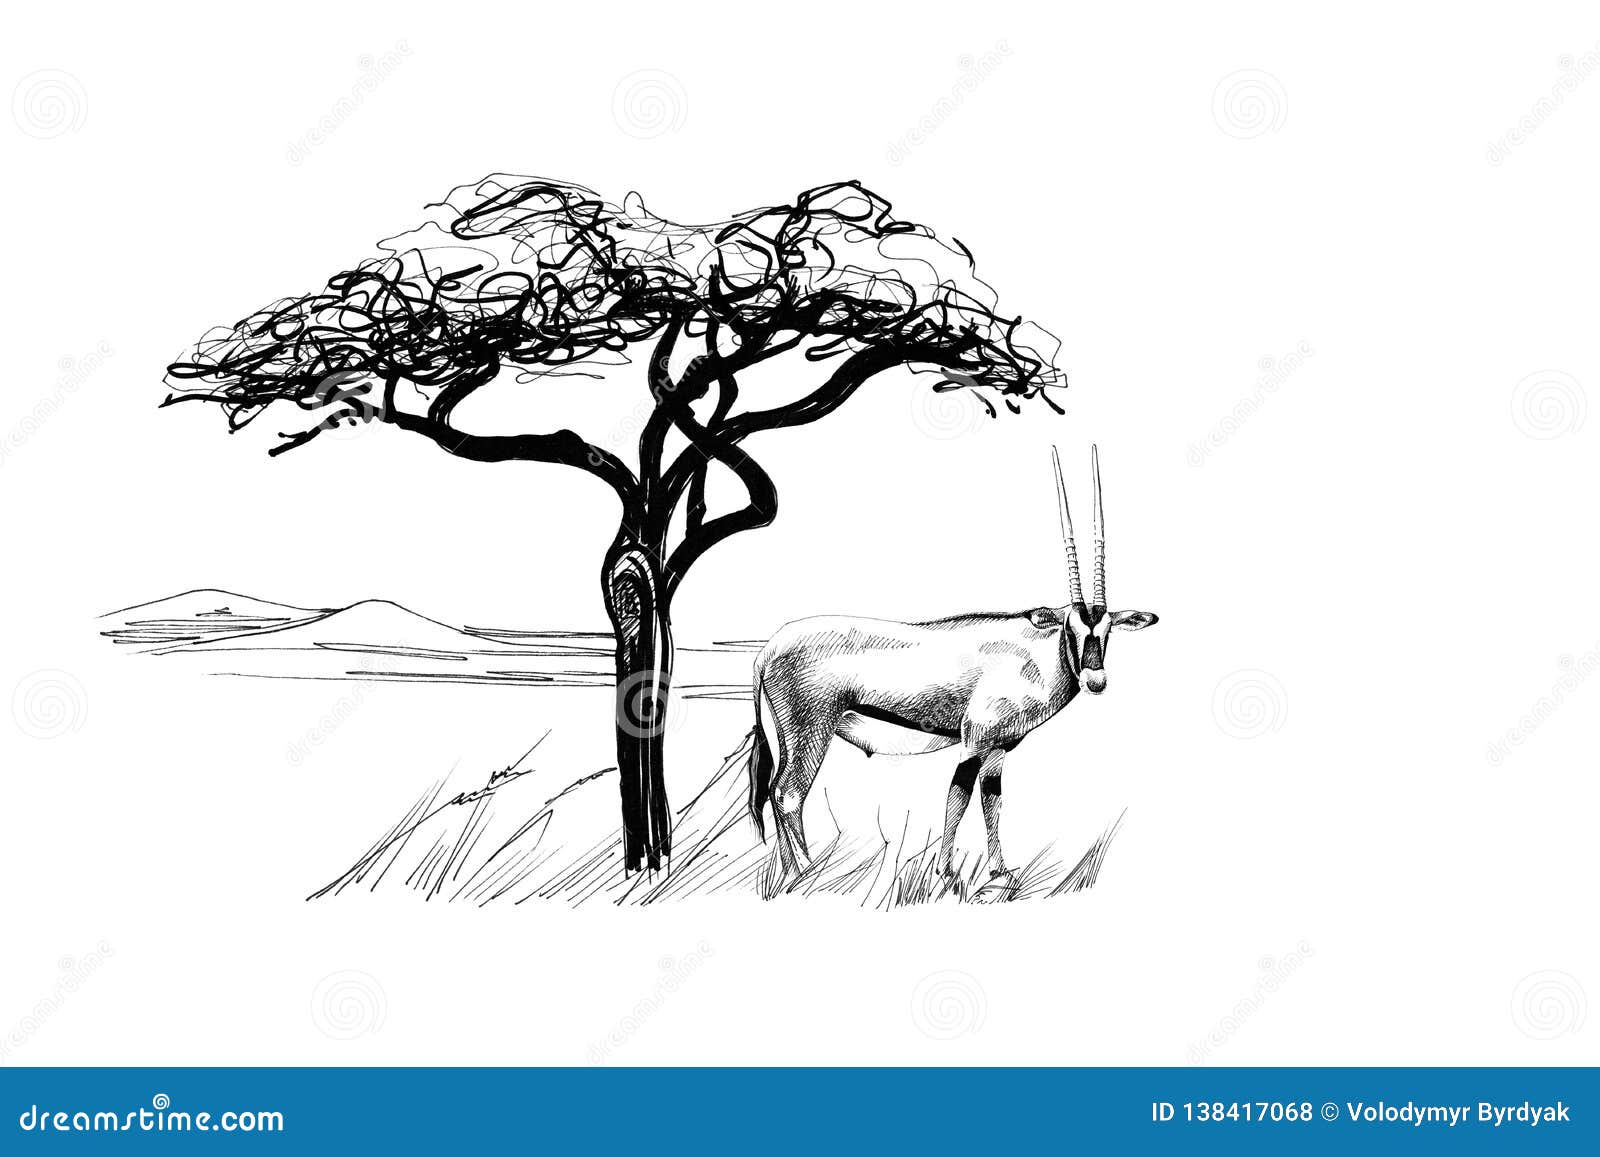 gemsbok antelope oryx gazella near a tree in africa. hand drawn 